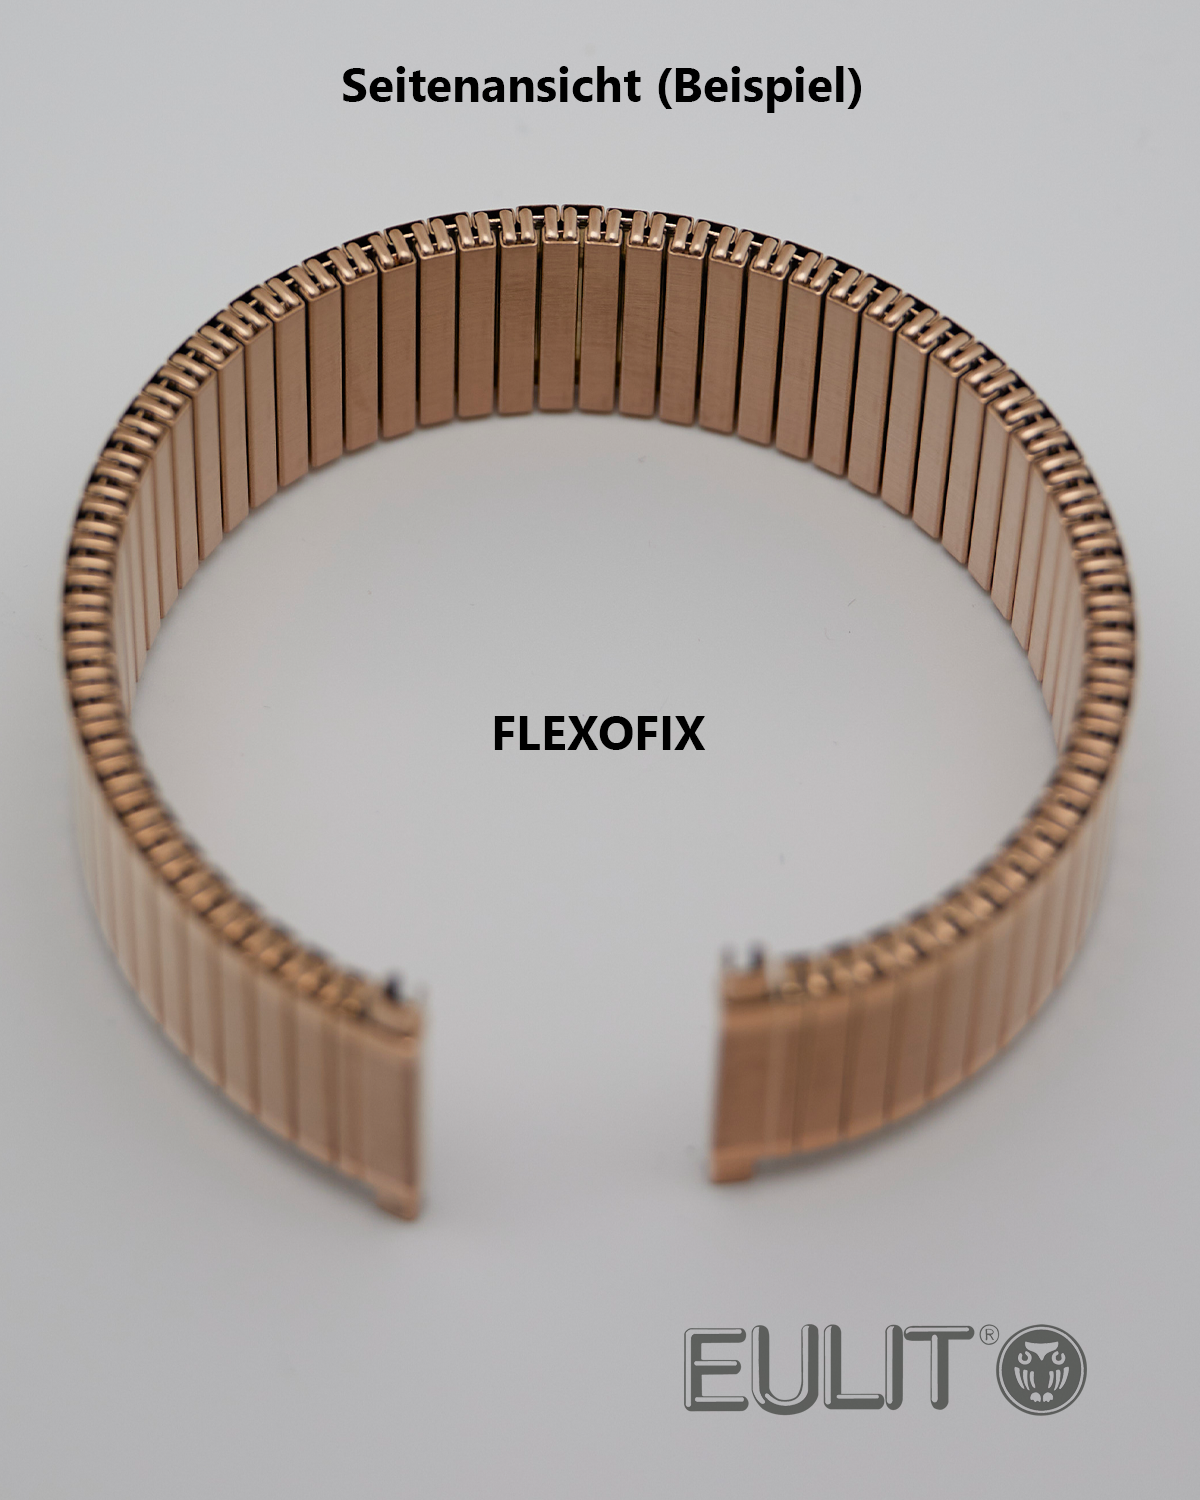 76-410002 EULIT FLEXOFIX 18-20 mm Edelstahl